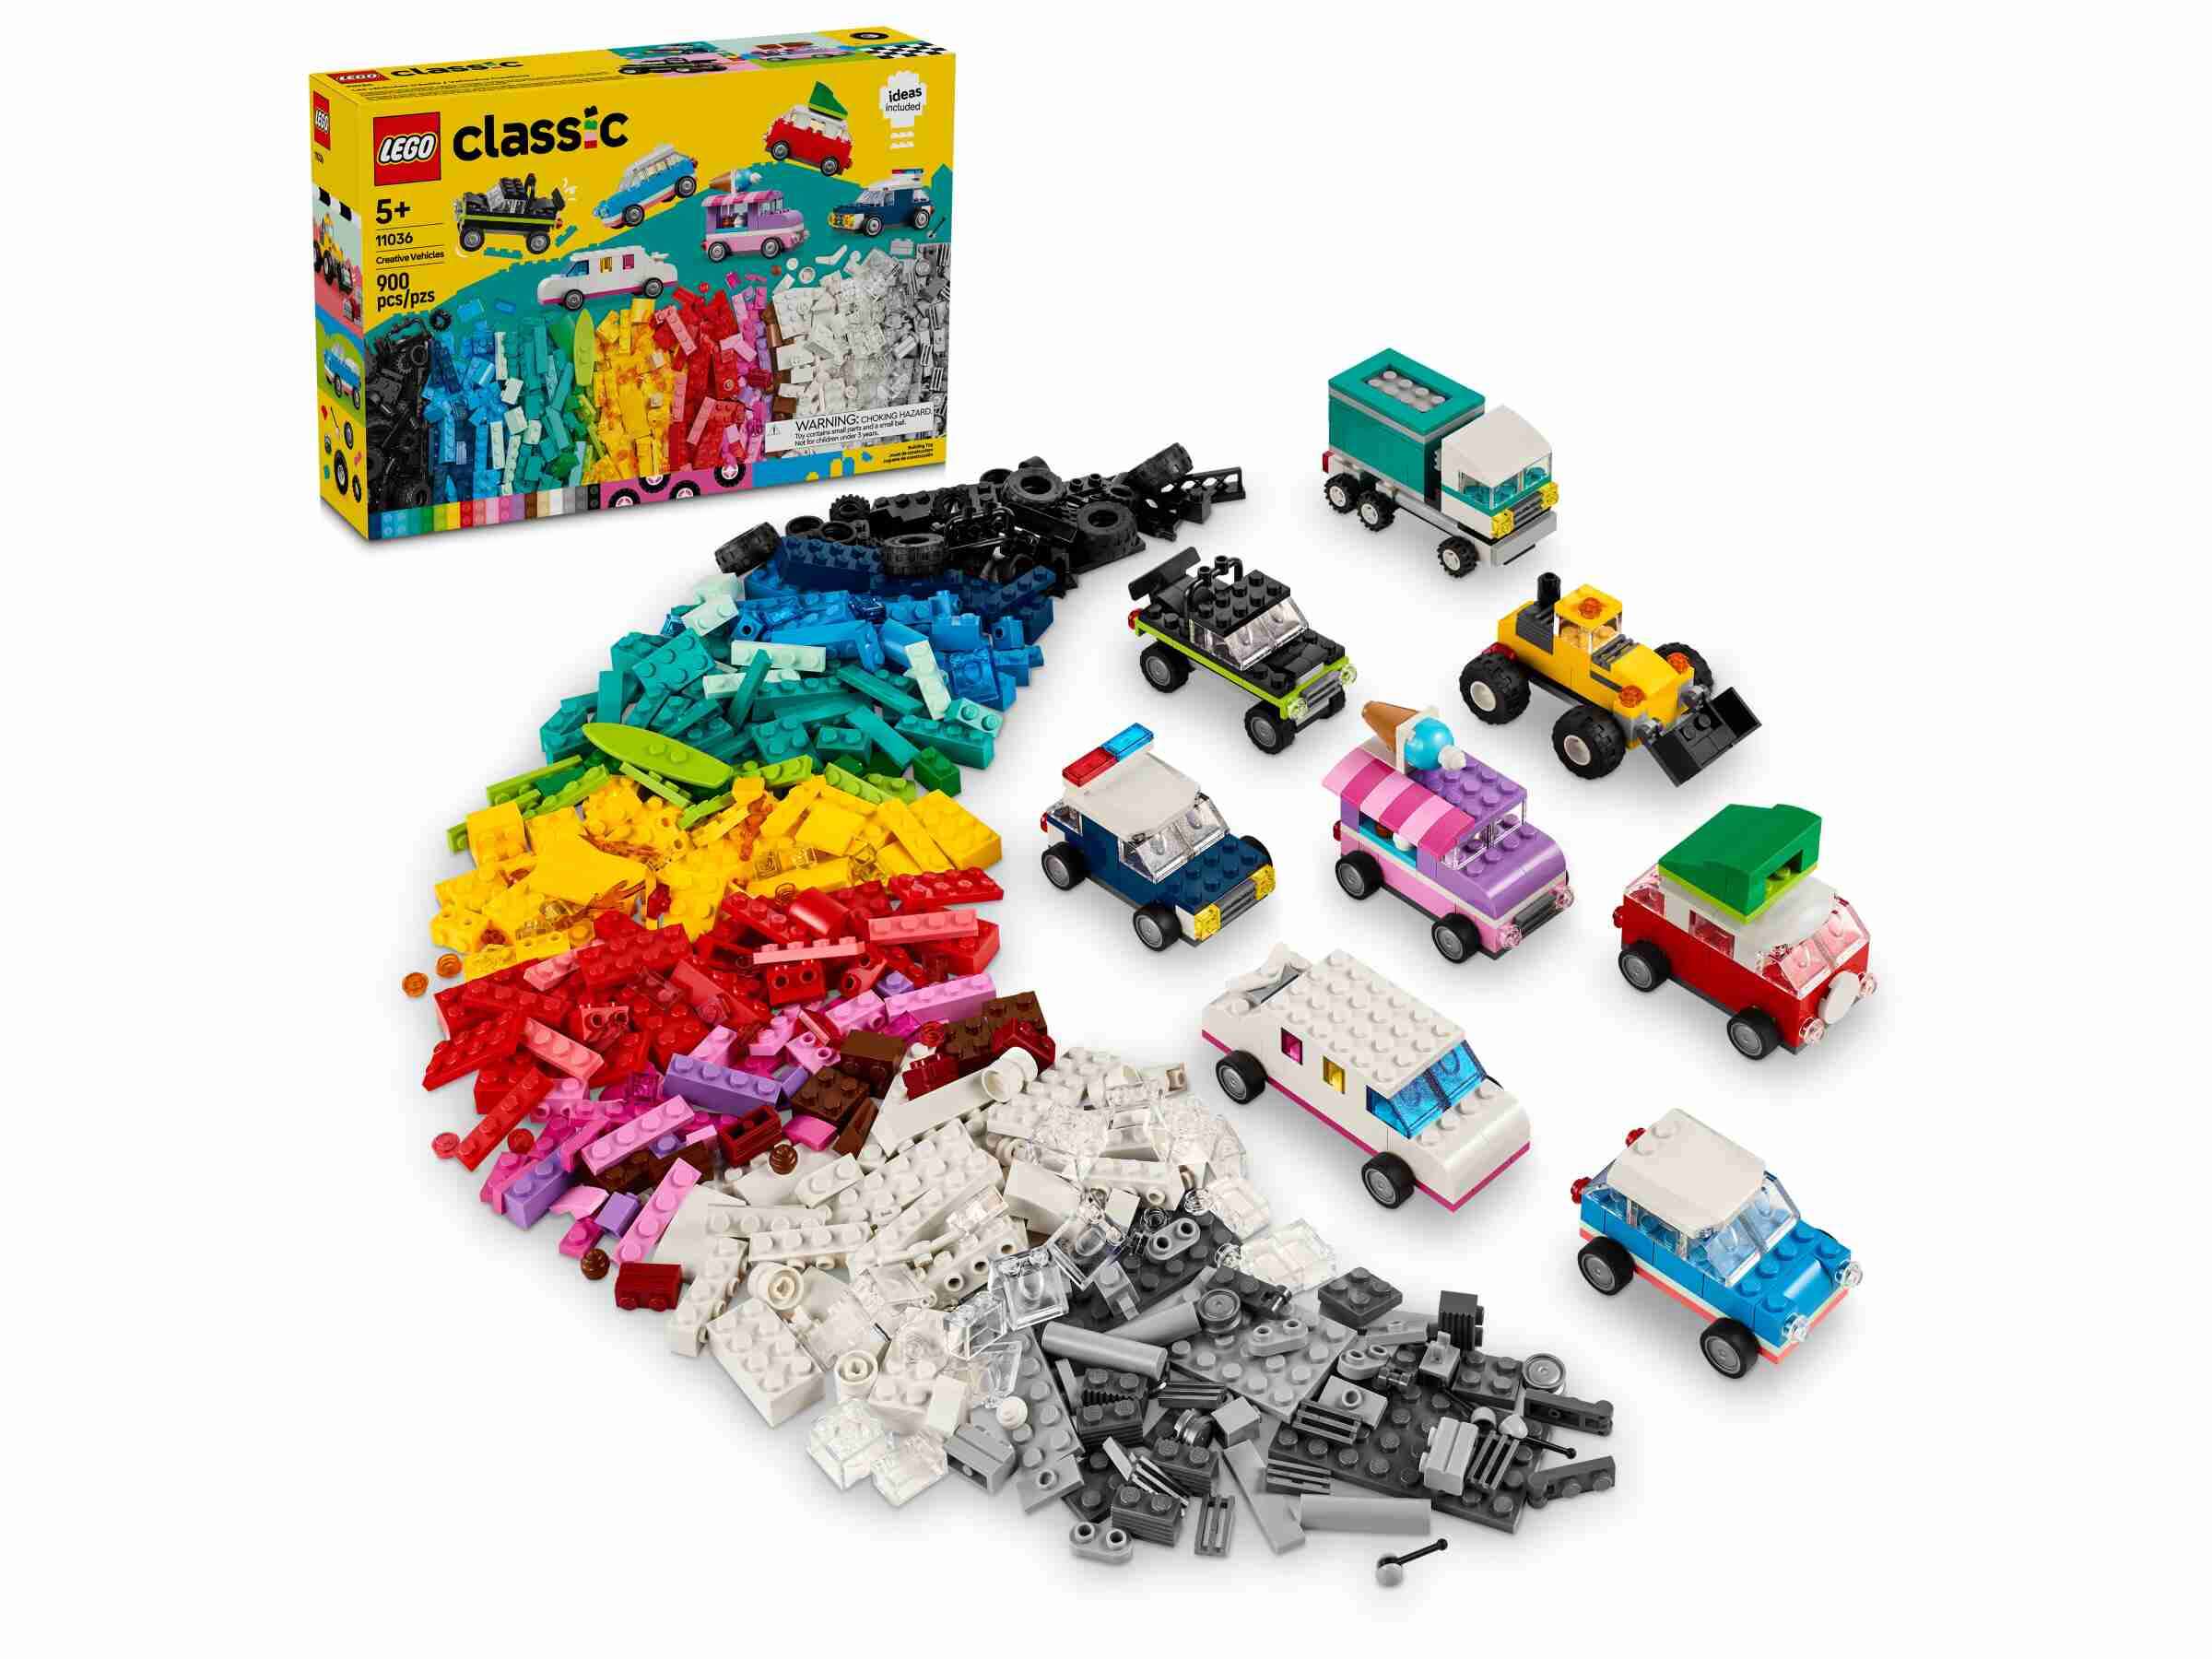 LEGO 11029 Classic Boîte de Fête Créative, Ensemble de Briques, à Jouer en  Famille, Comprend 12 Mini Jouets : Ourson, Clown, Licorne, Ludique pour 5